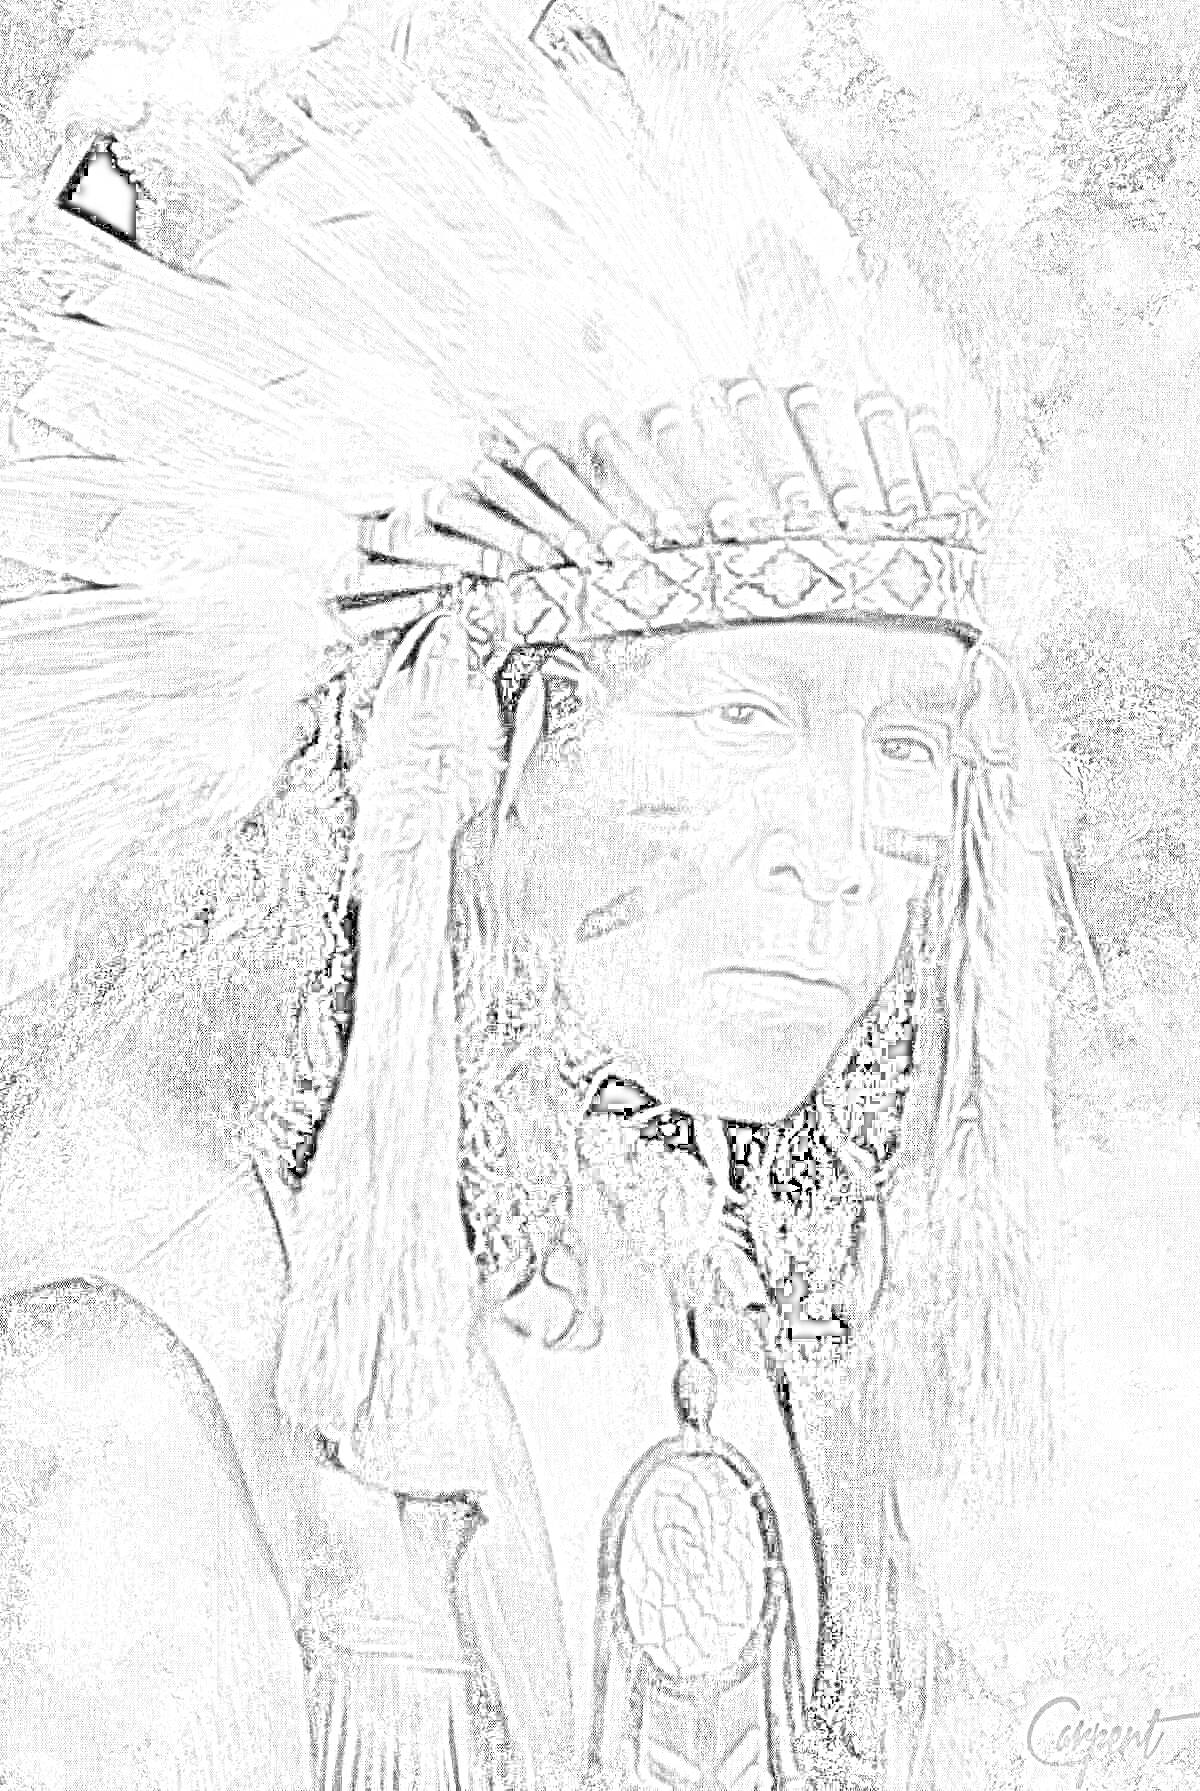 Раскраска Портрет индейца с боевой раскраской, вождь в головном уборе с перьями, амулет на груди